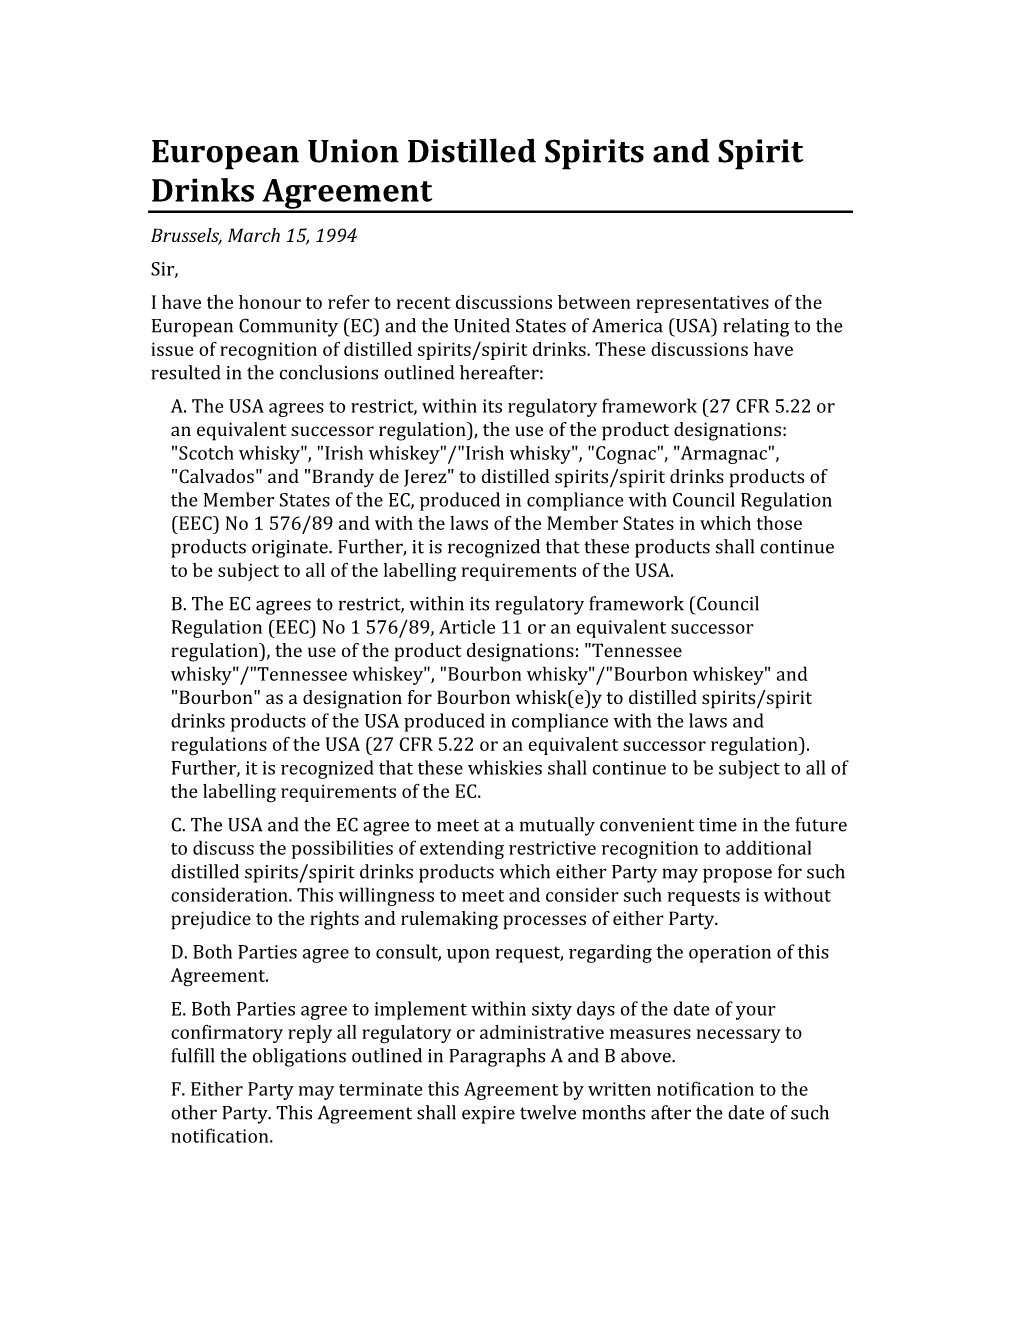 European Union Distilled Spirits and Spirit Drinks Agreement